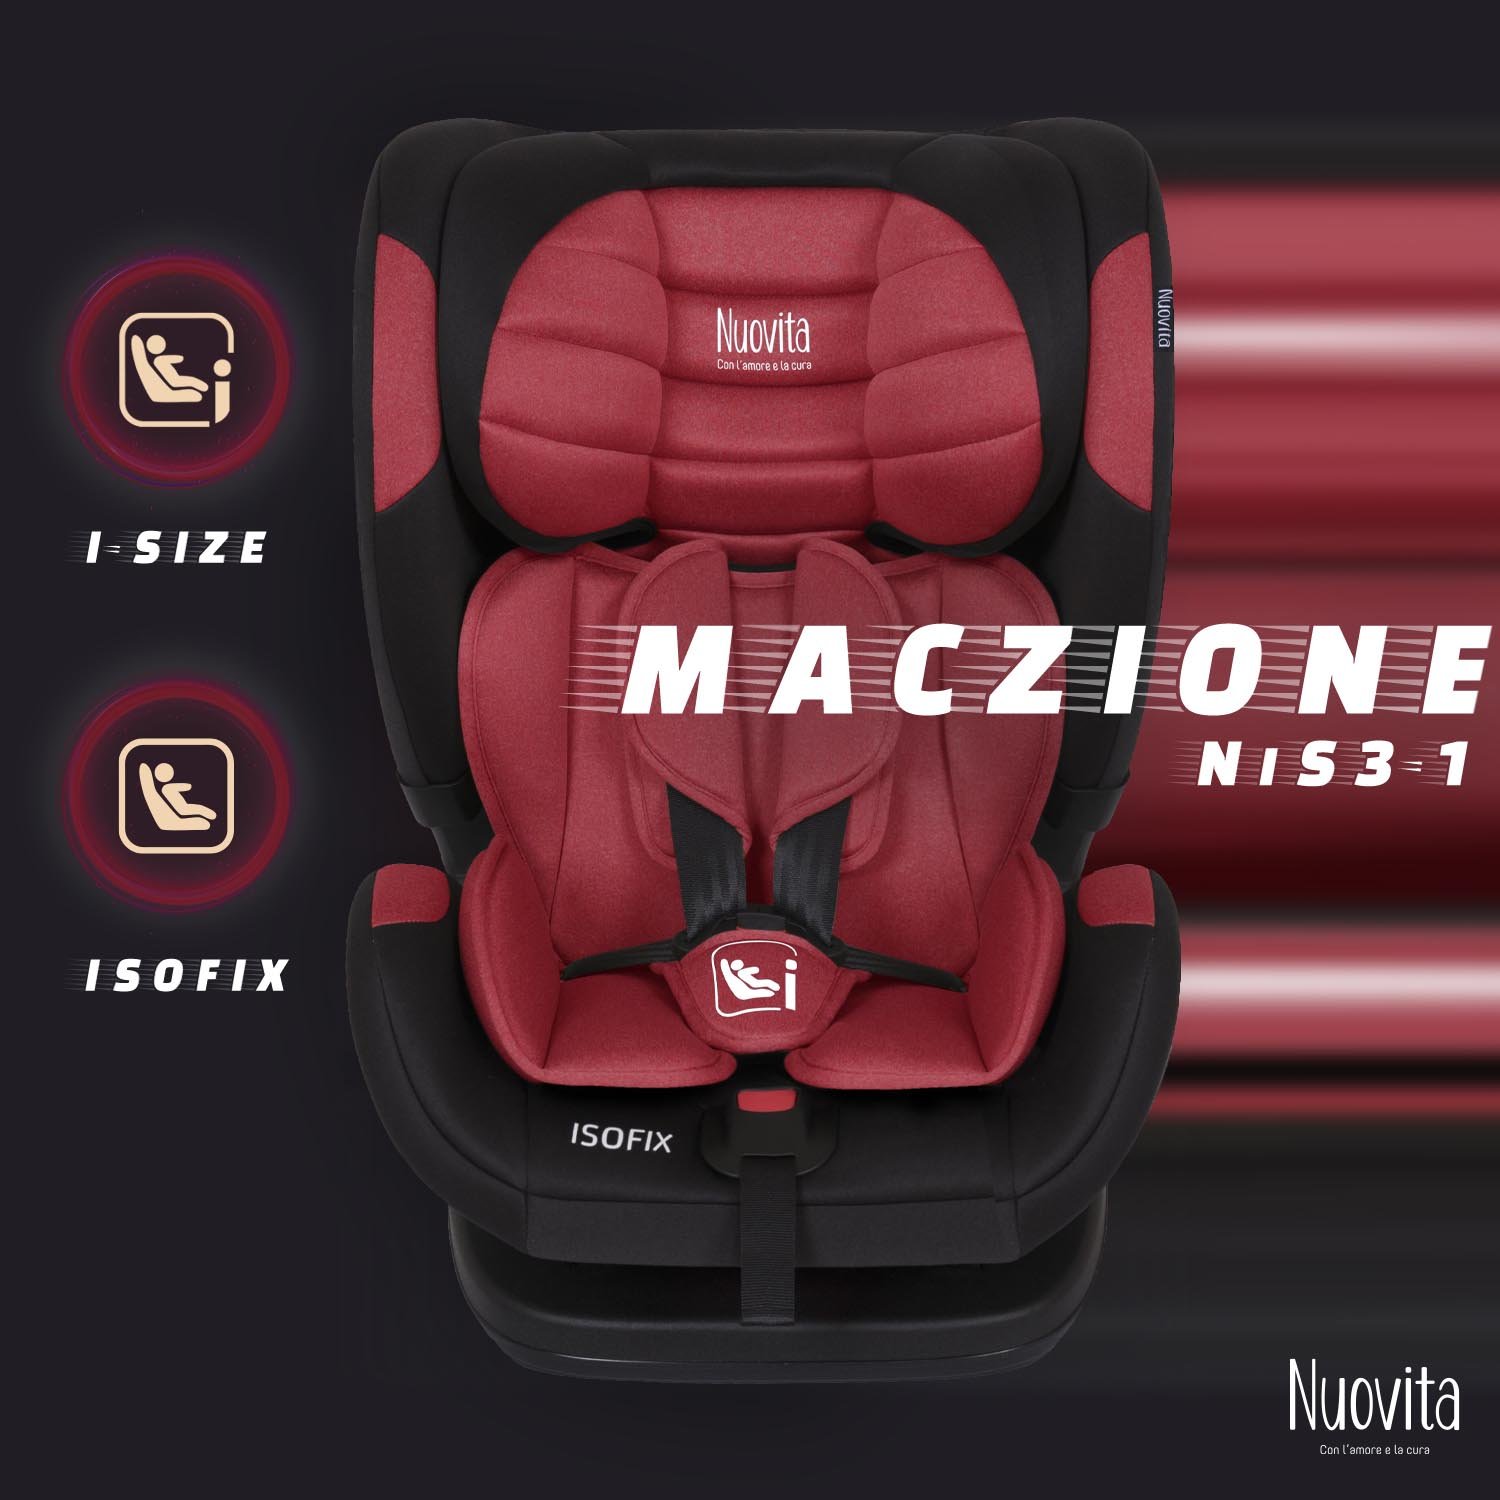 Детское автокресло Nuovita Maczione NiS3-1, Isofix, группа 1,2,3, 9-36 кг (Красный) автокресло nuovita maczione n23 1